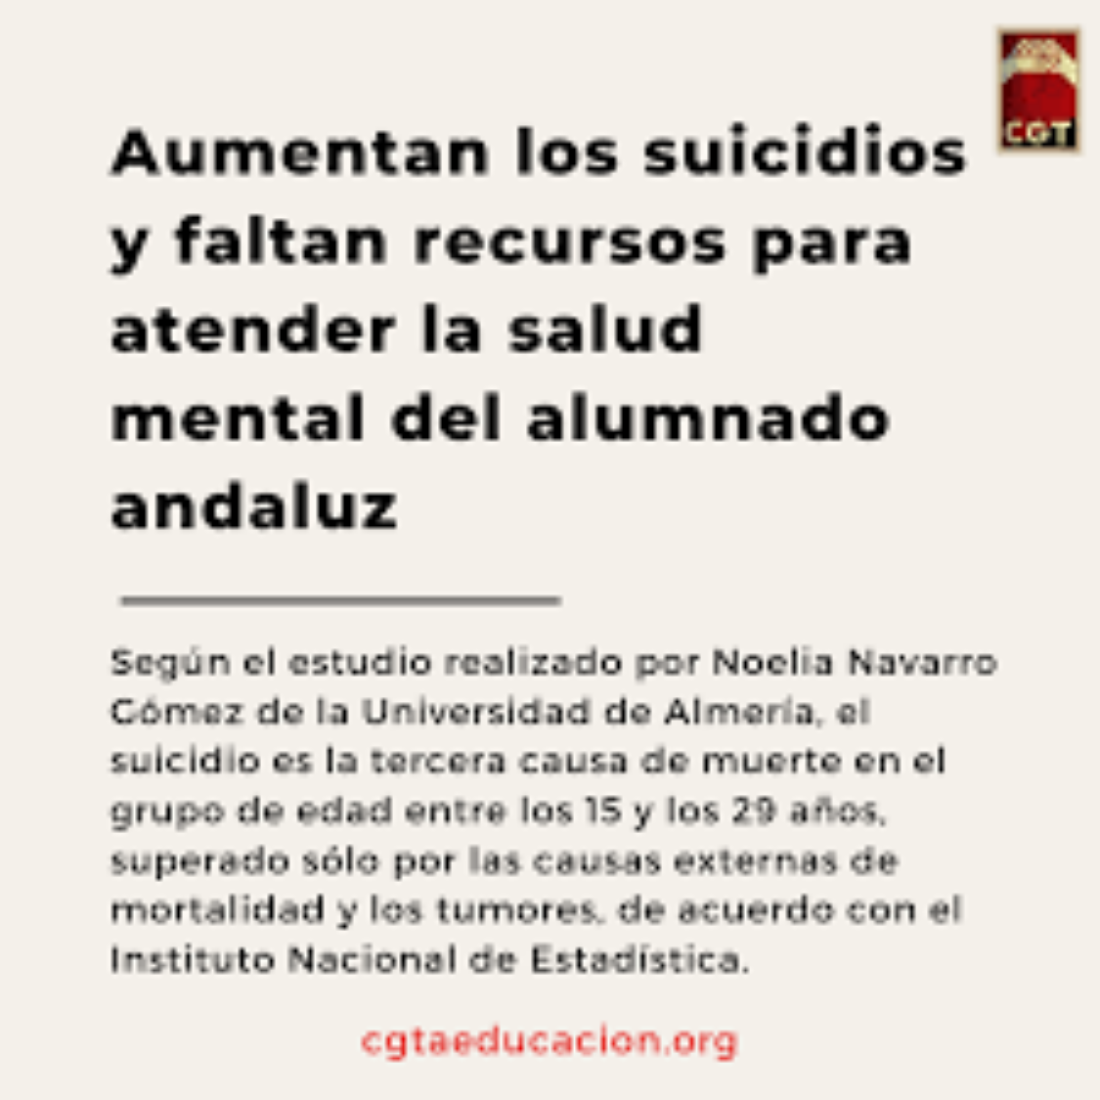 Aumentan los suicidios y faltan recursos para atender la salud mental del alumnado andaluz